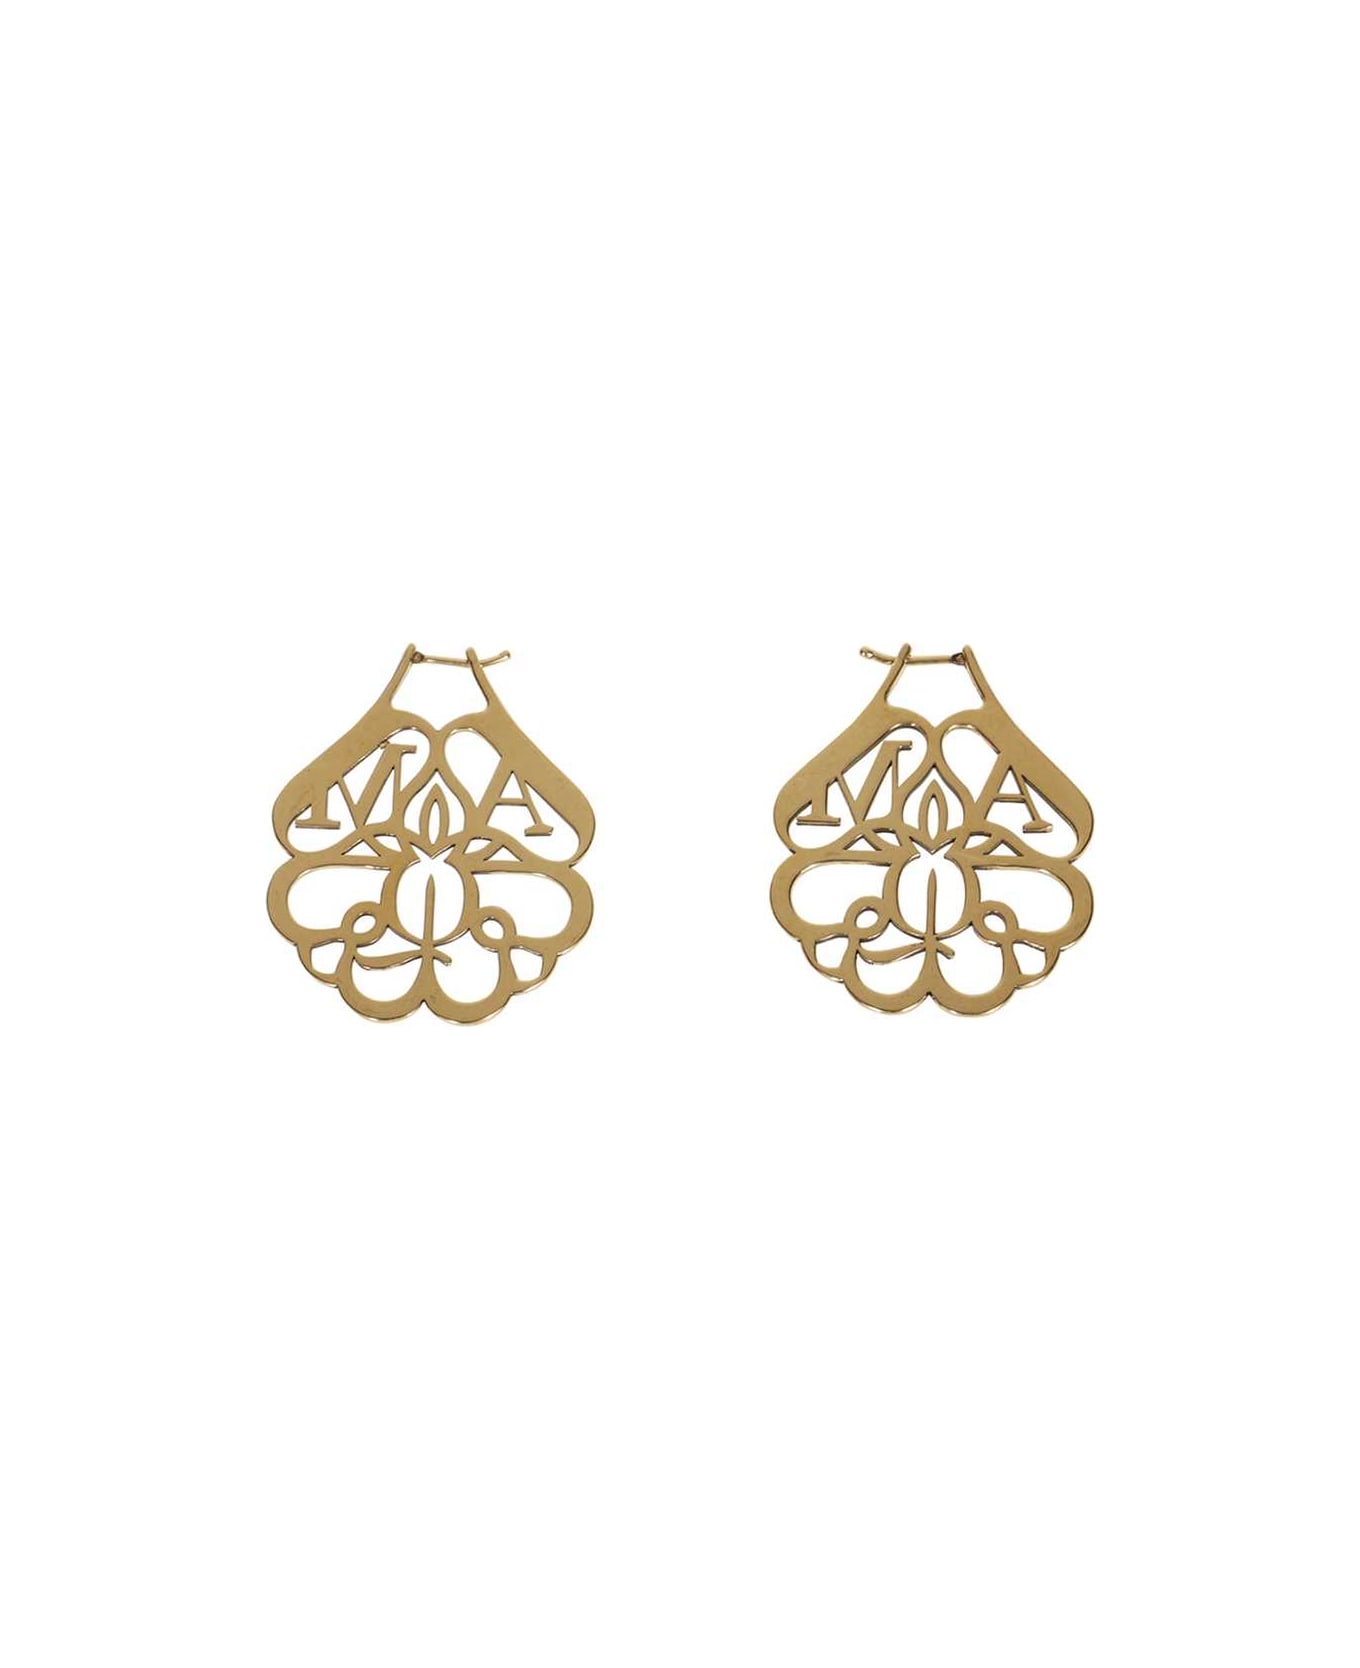 Alexander McQueen Logoed Earrings - Gold イヤリング